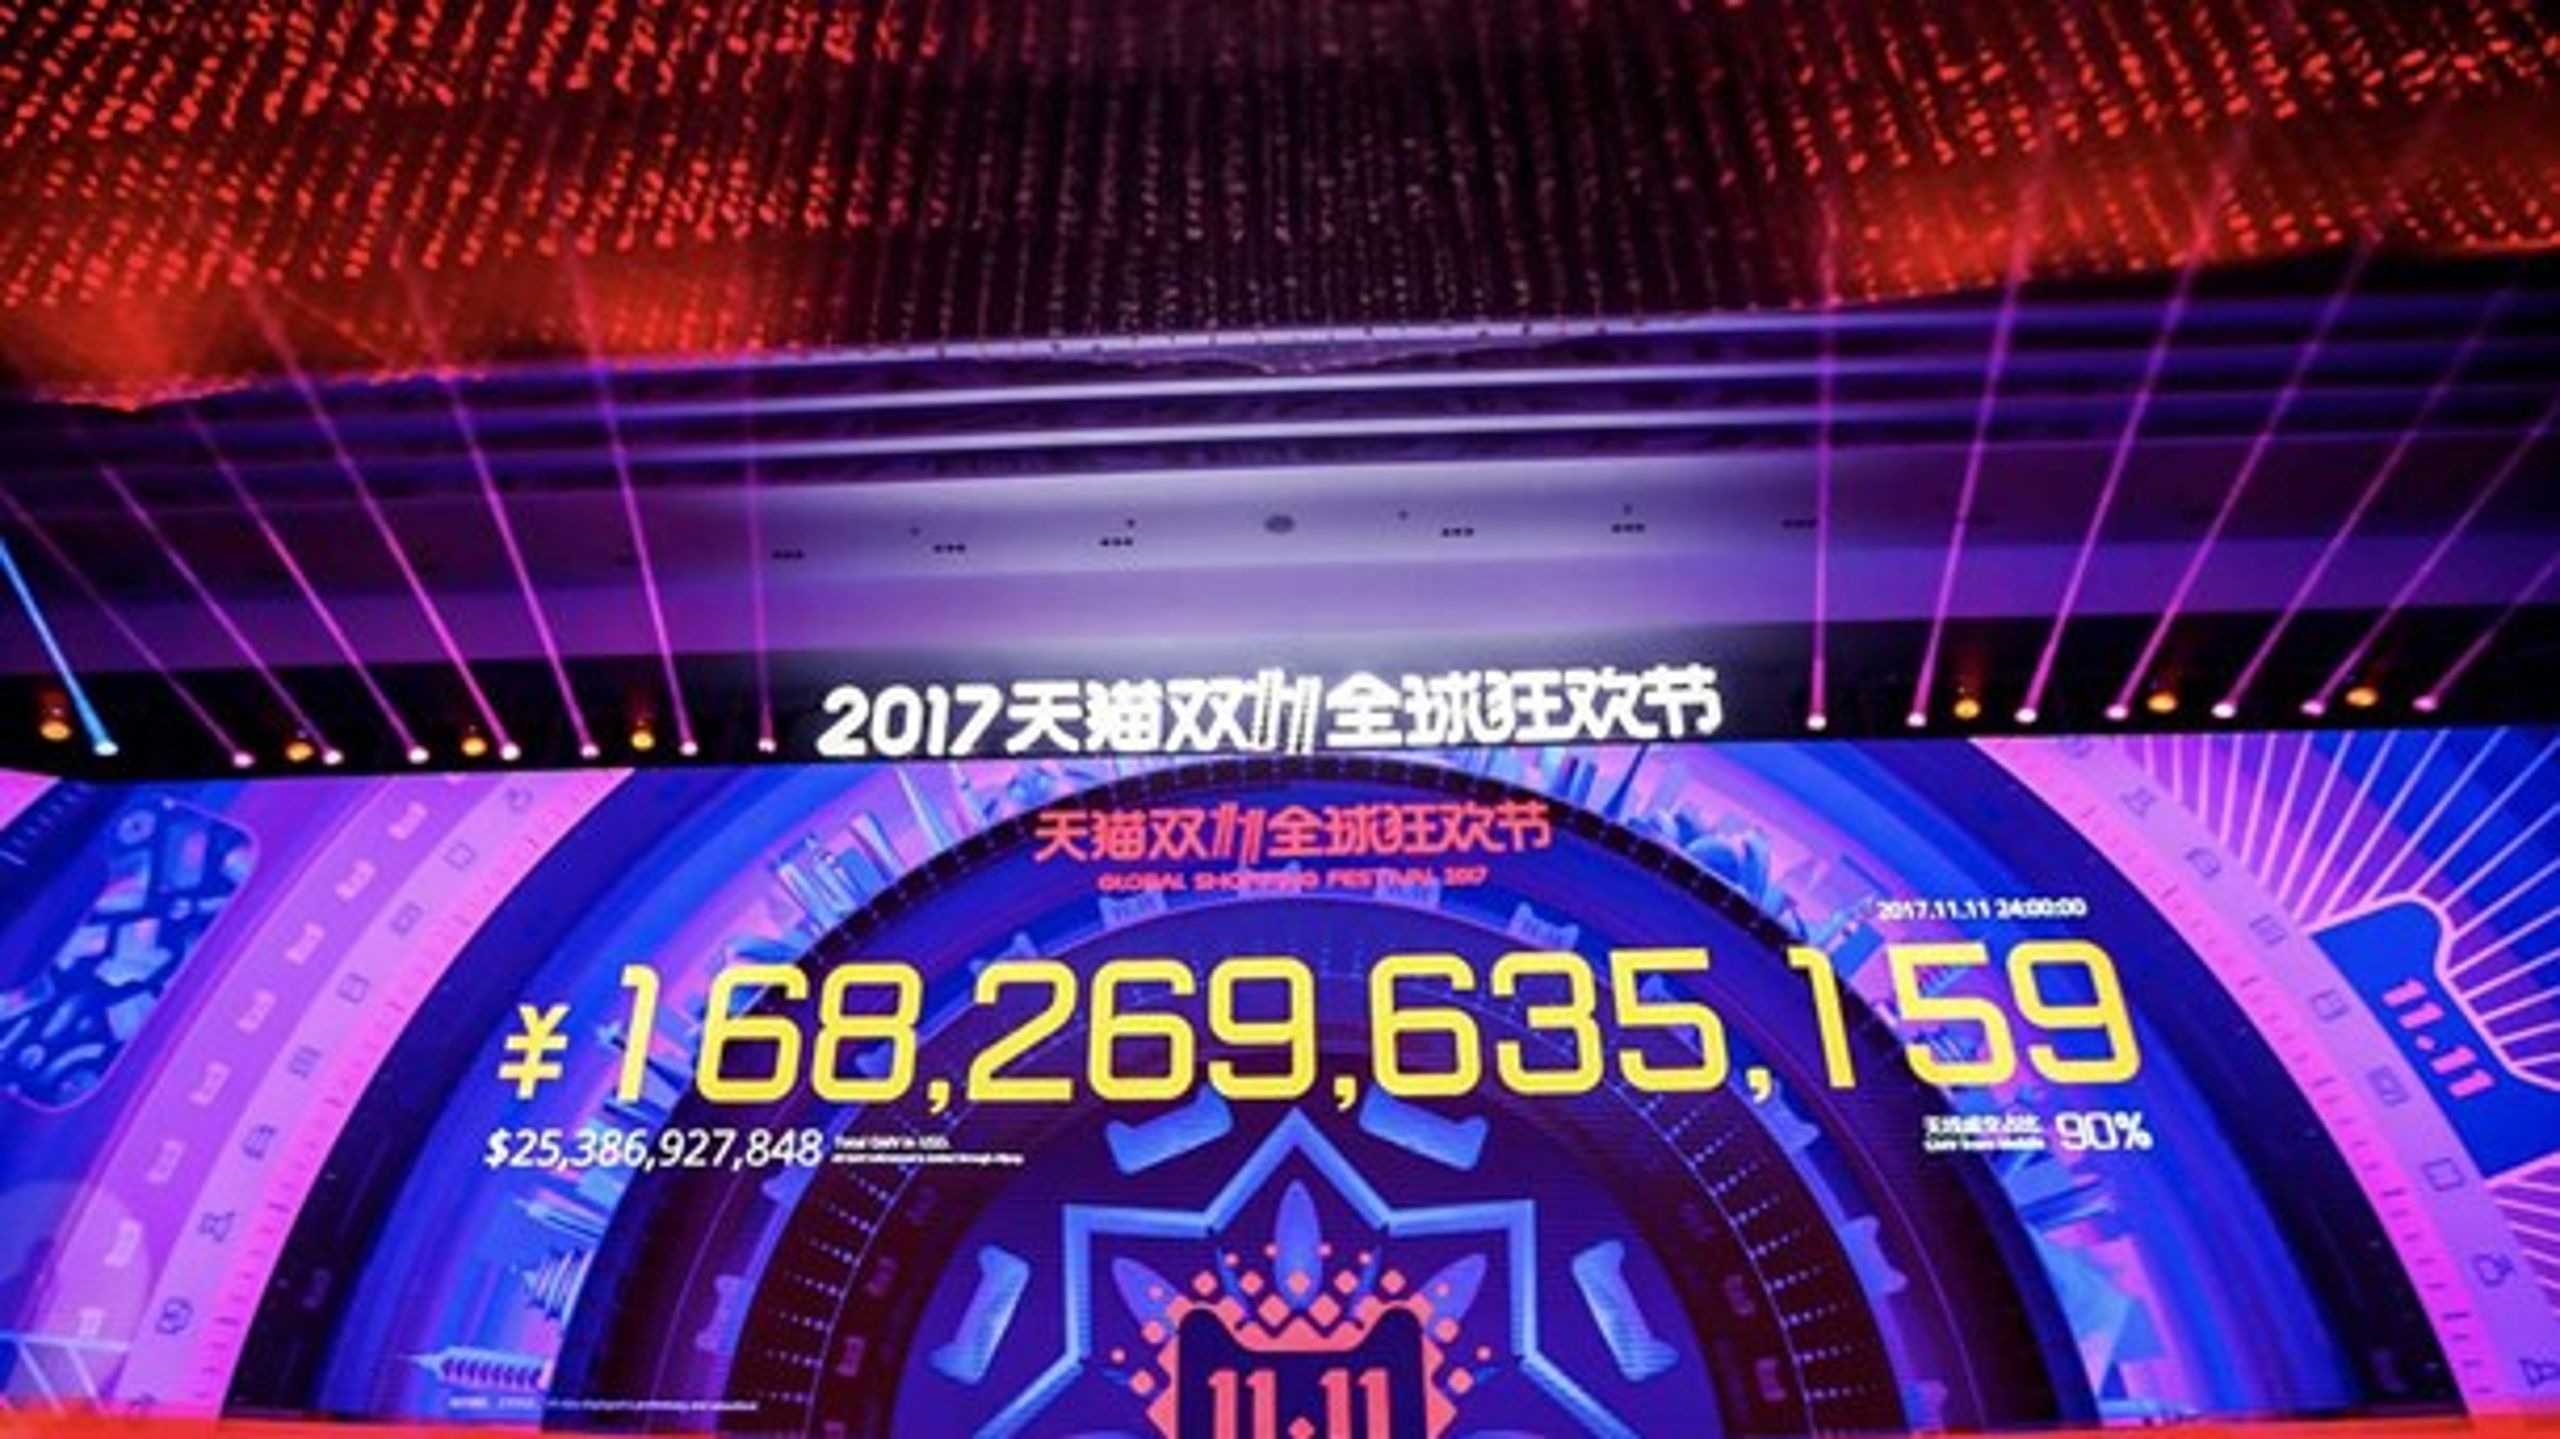 Verdens største ehandelsvirksomhed, kinesiske Alibaba, slog alle omsætningsrekorder på dette års Singles Day. I alt blev der i løbet af 24 timer købt varer for 168 mia. yuan, eller hvad der svarer til 161 mia. kr.